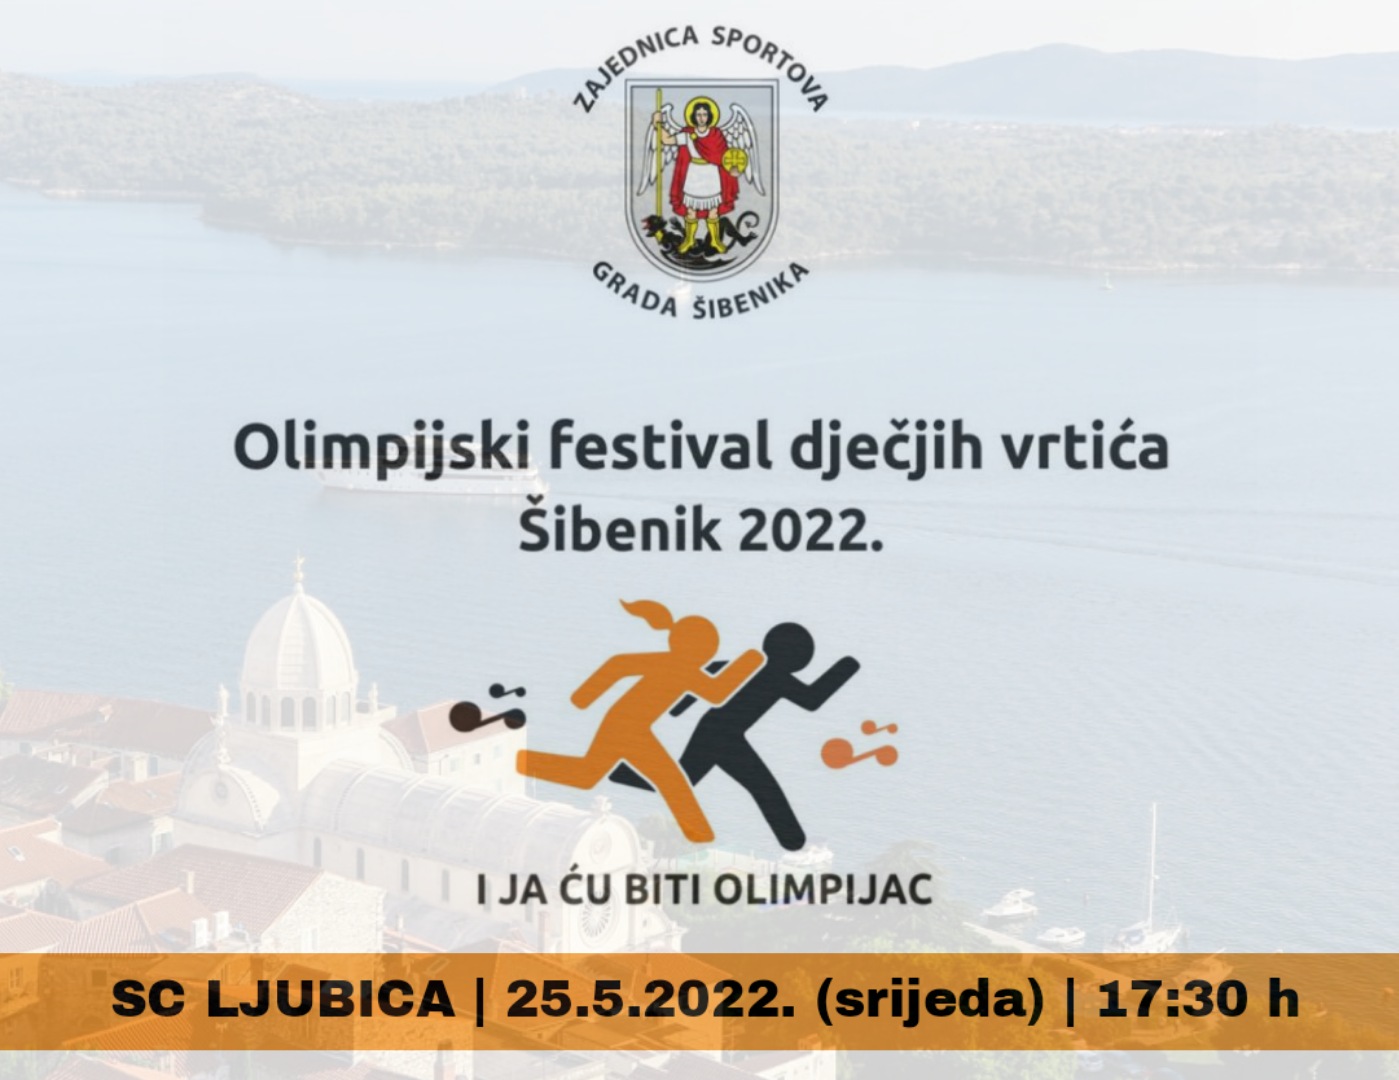 Olimpijski festival šibenskih dječjih vrtića u srijedu na Ljubici 